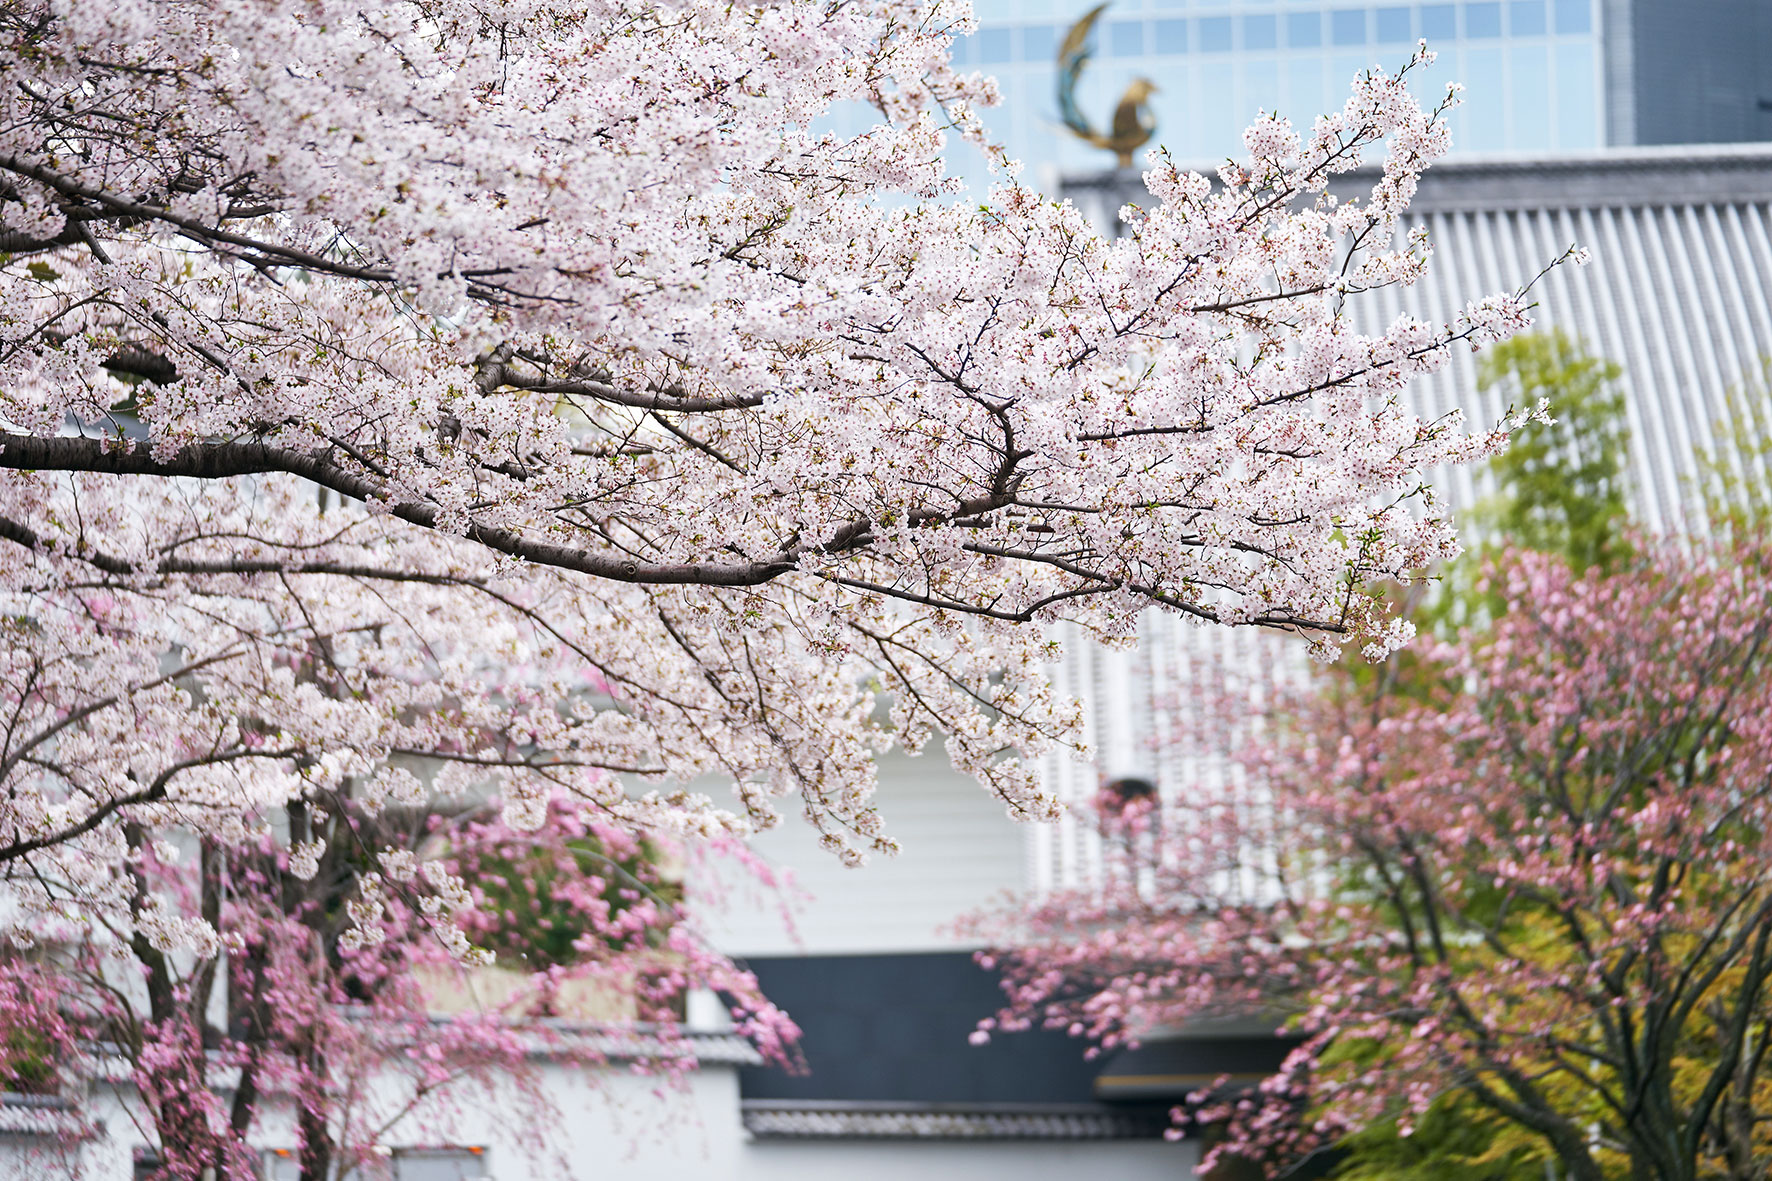 桜の時期のホテル雅叙園東京(外観)